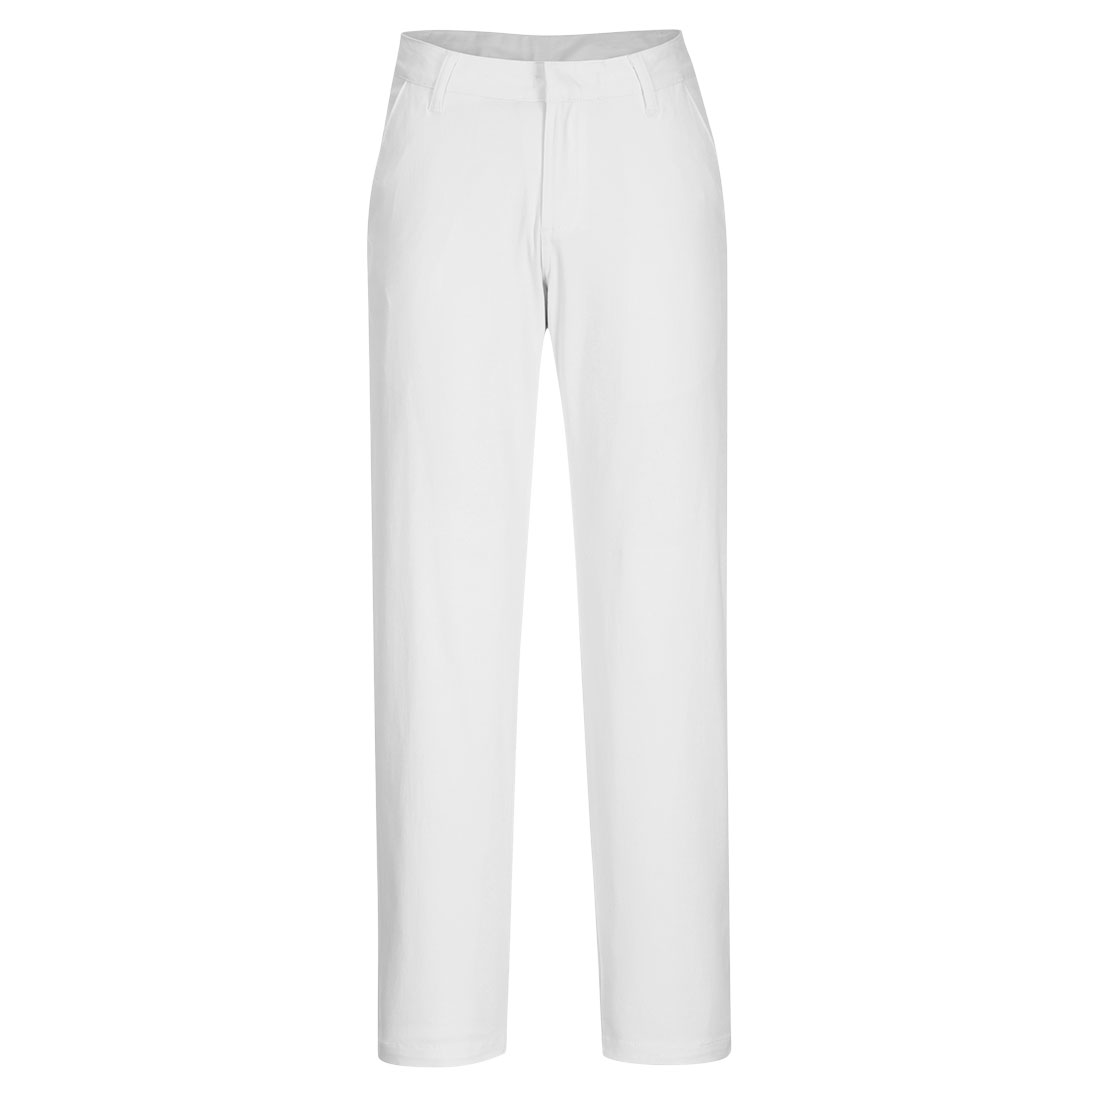 Women's Slim Chino Trouser - White